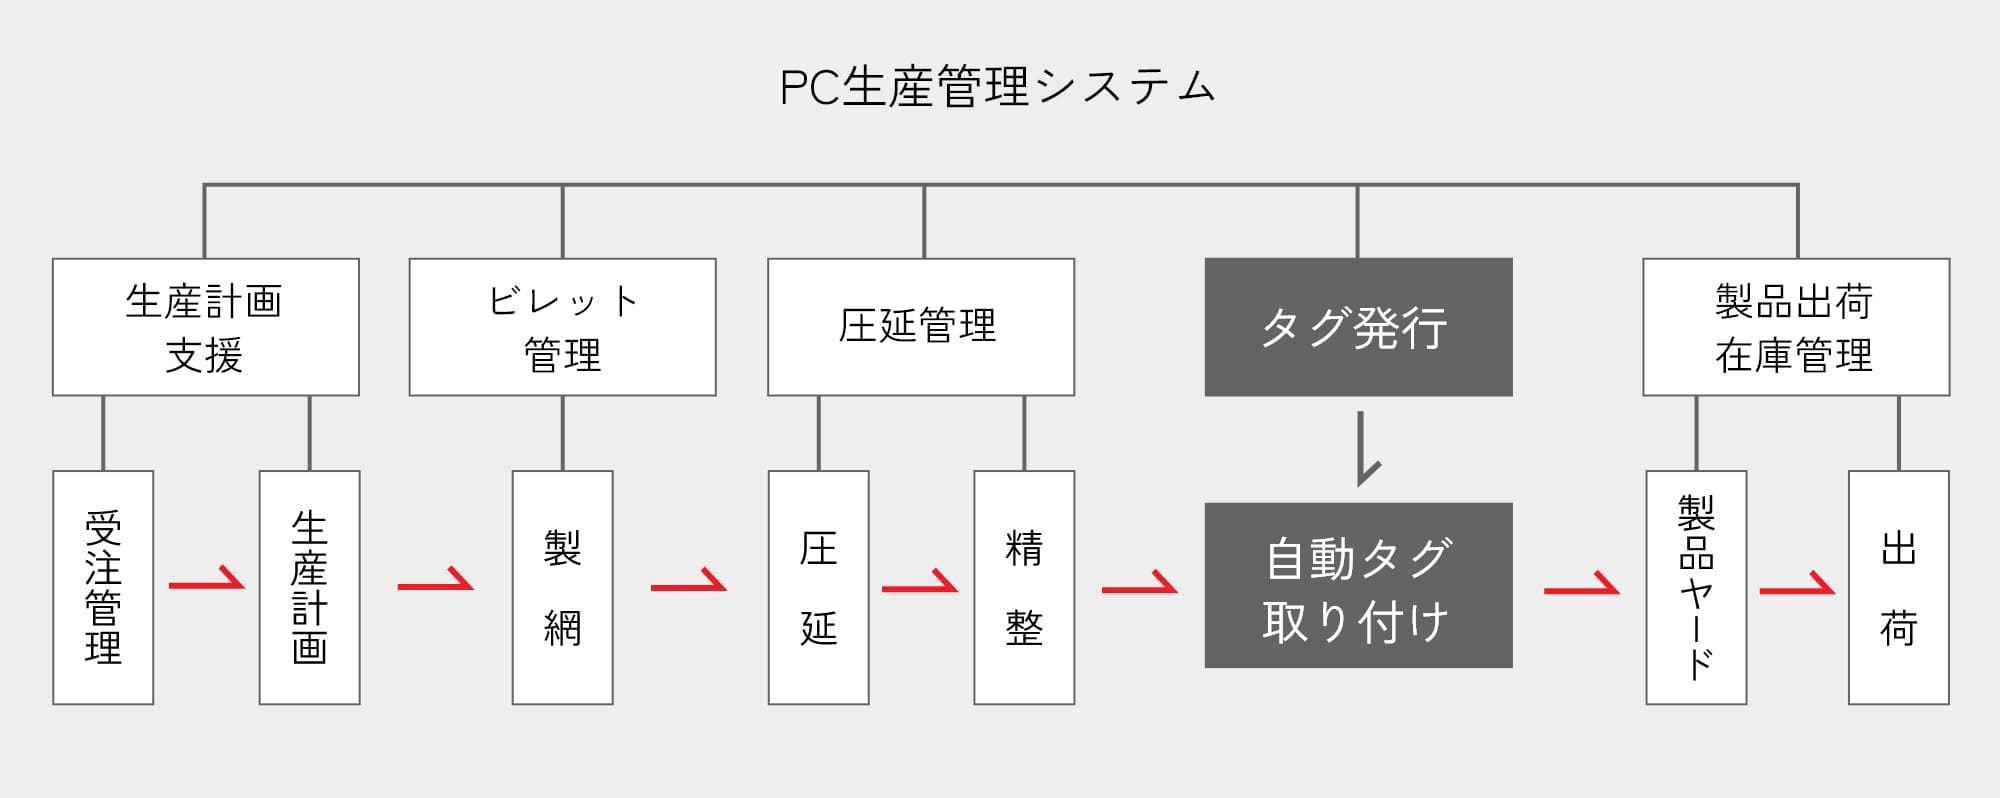 PC生産管理システム